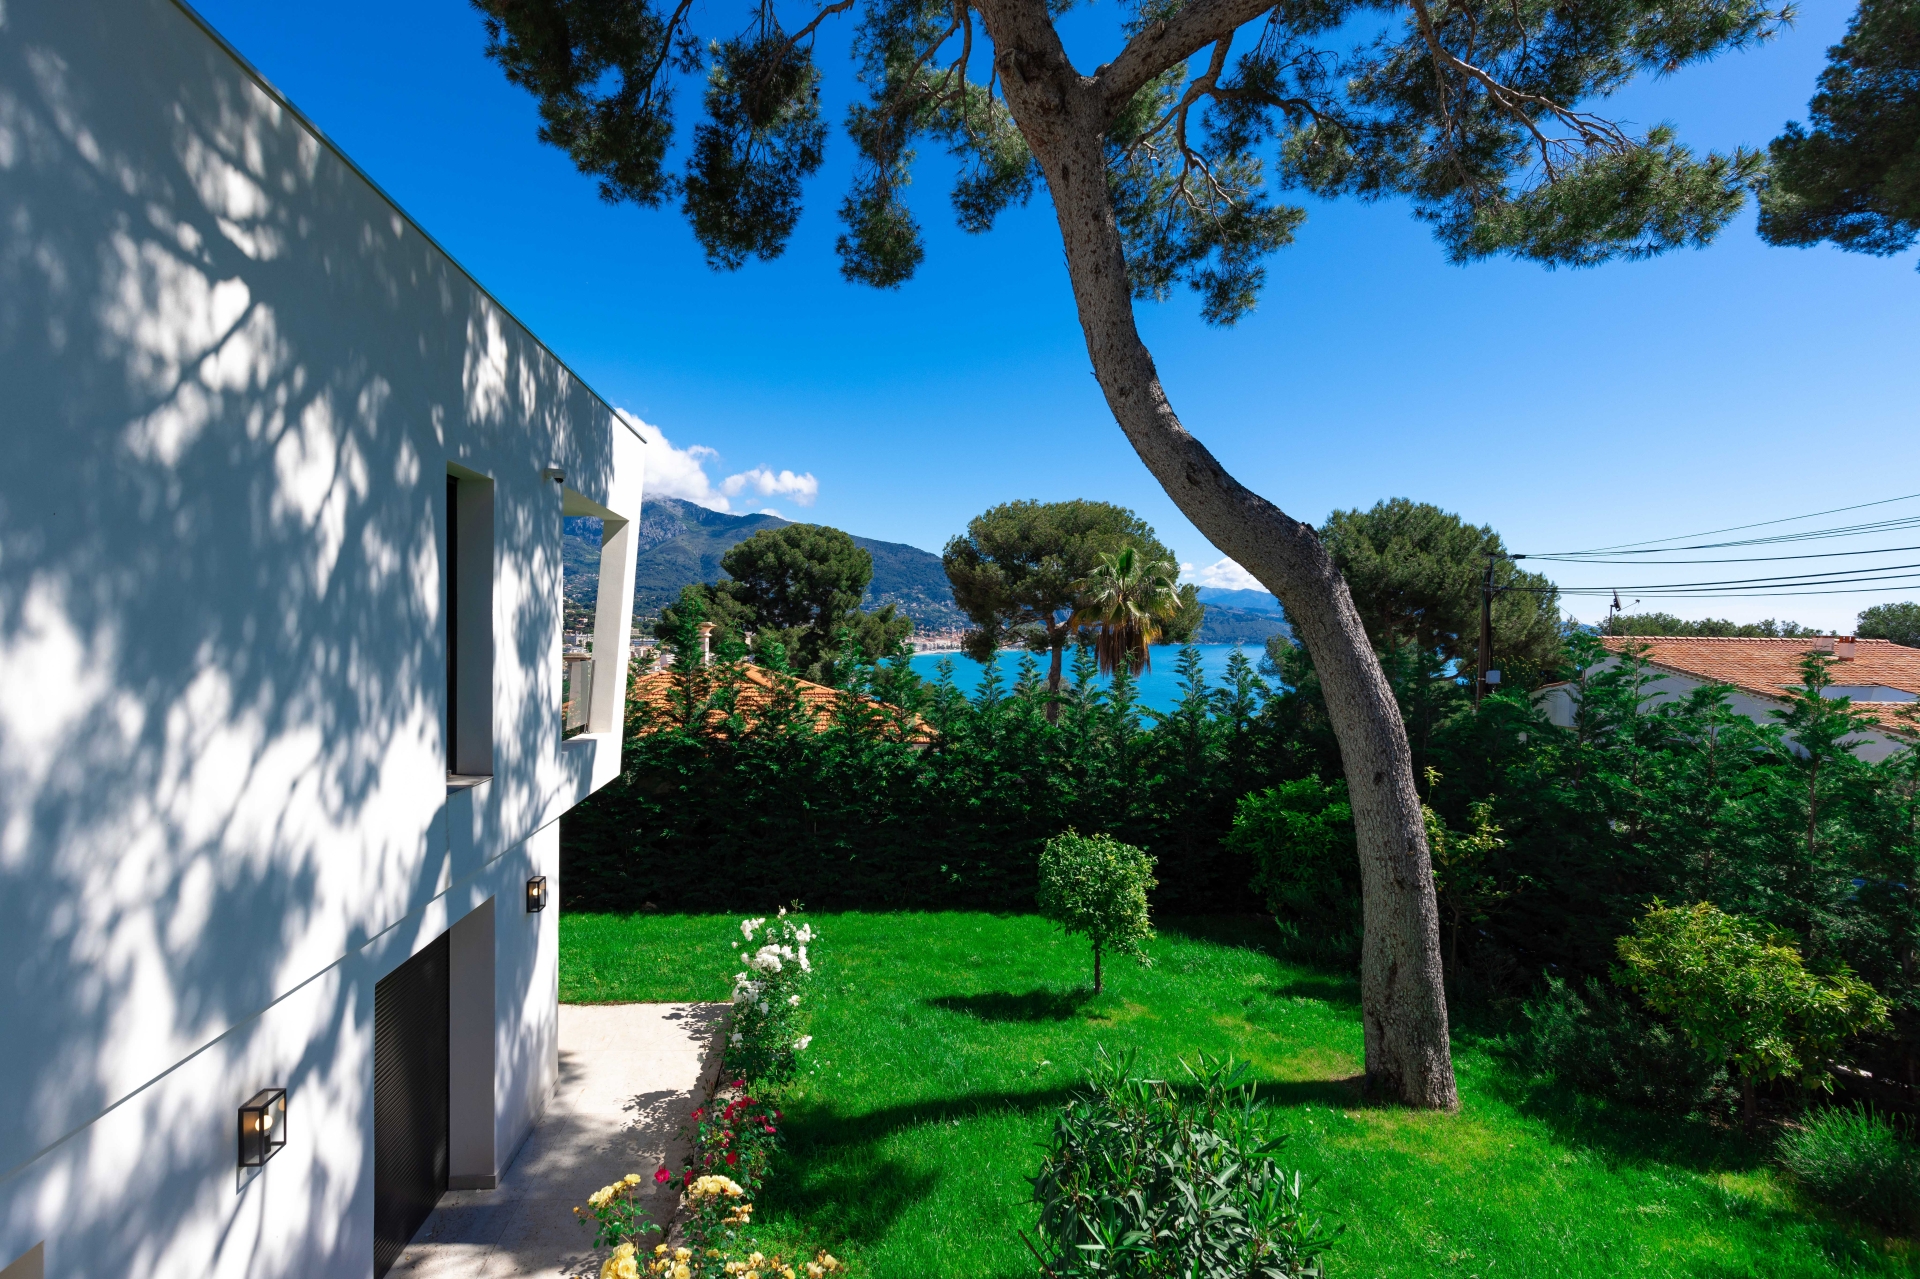 Dotta Villa a vendre - VILLA STECYA - Roquebrune-Cap-Martin - Roquebrune-Cap-Martin - img074a5003